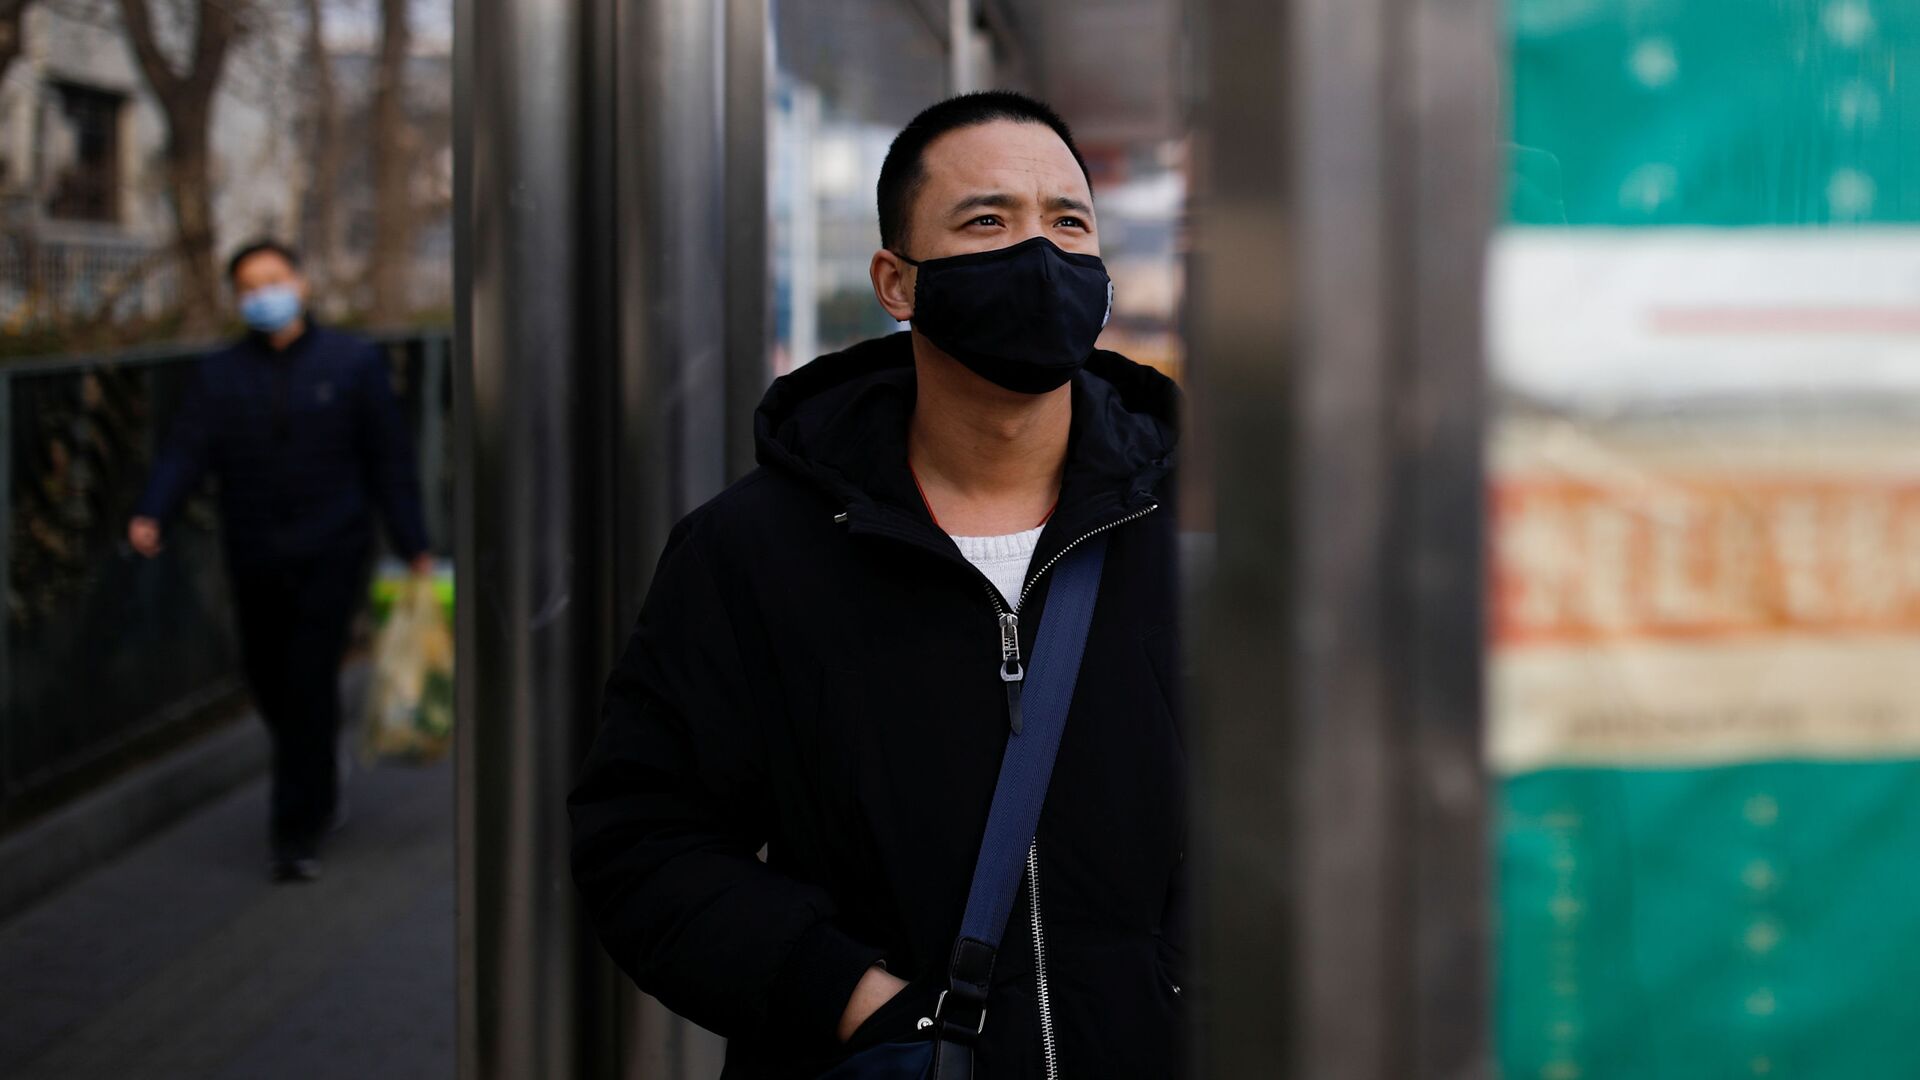 Мужчина в медицинской маске на автобусной остановке в Пекине, Китай, 27 января 2020 года - Sputnik Азербайджан, 1920, 17.01.2022